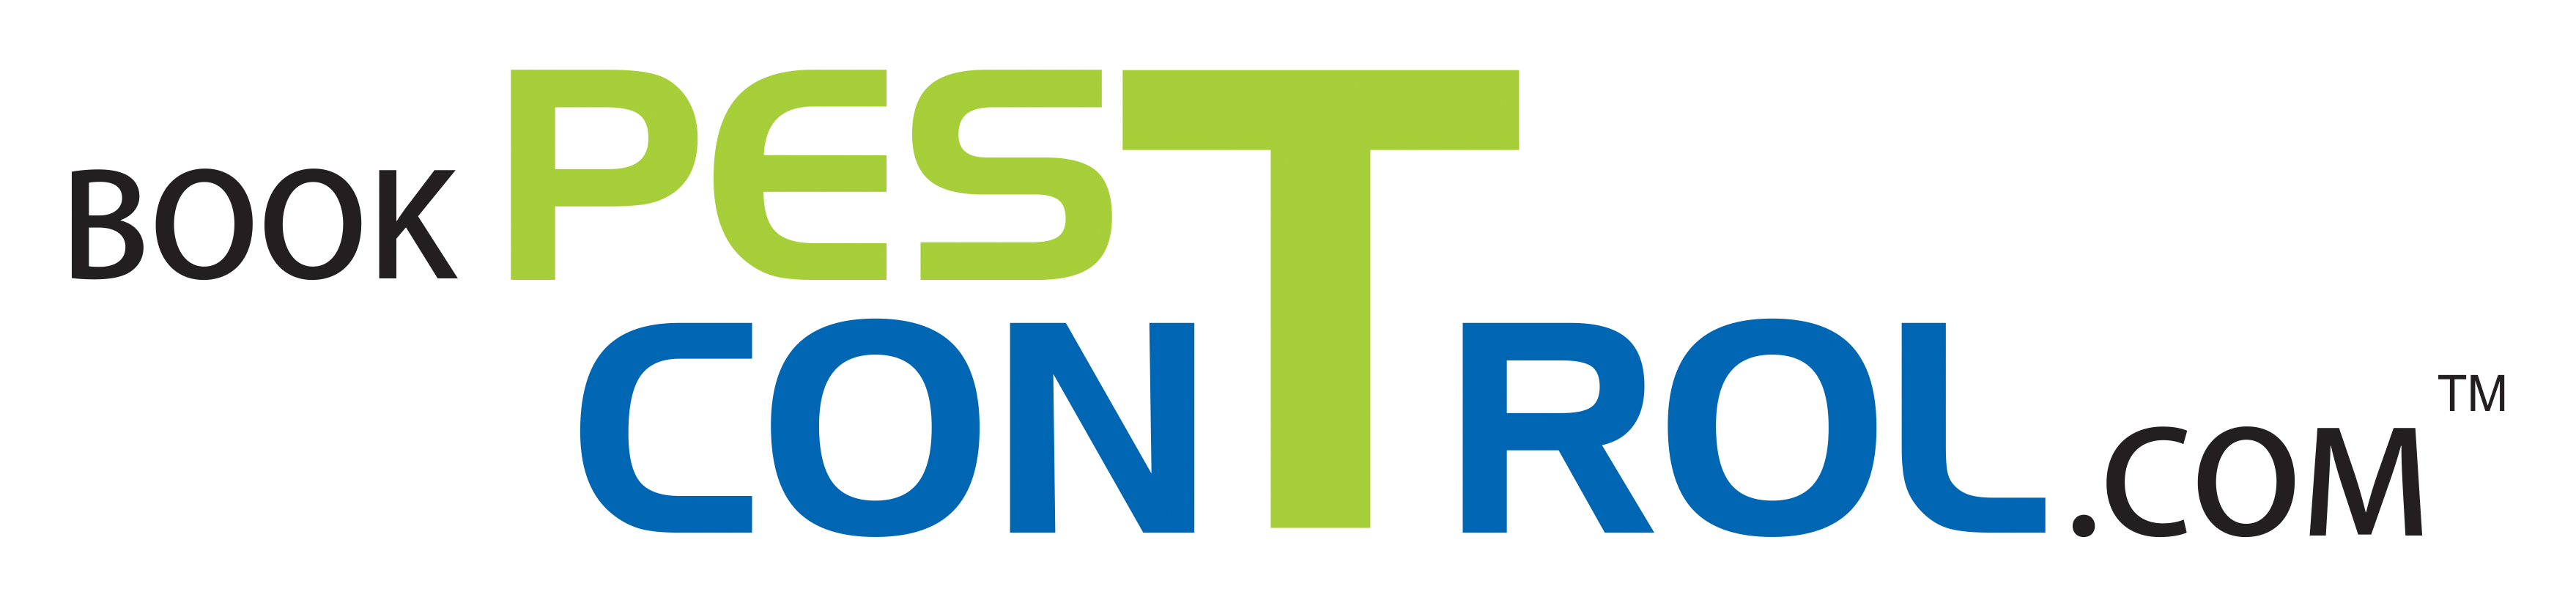 BookPestControl.com logo